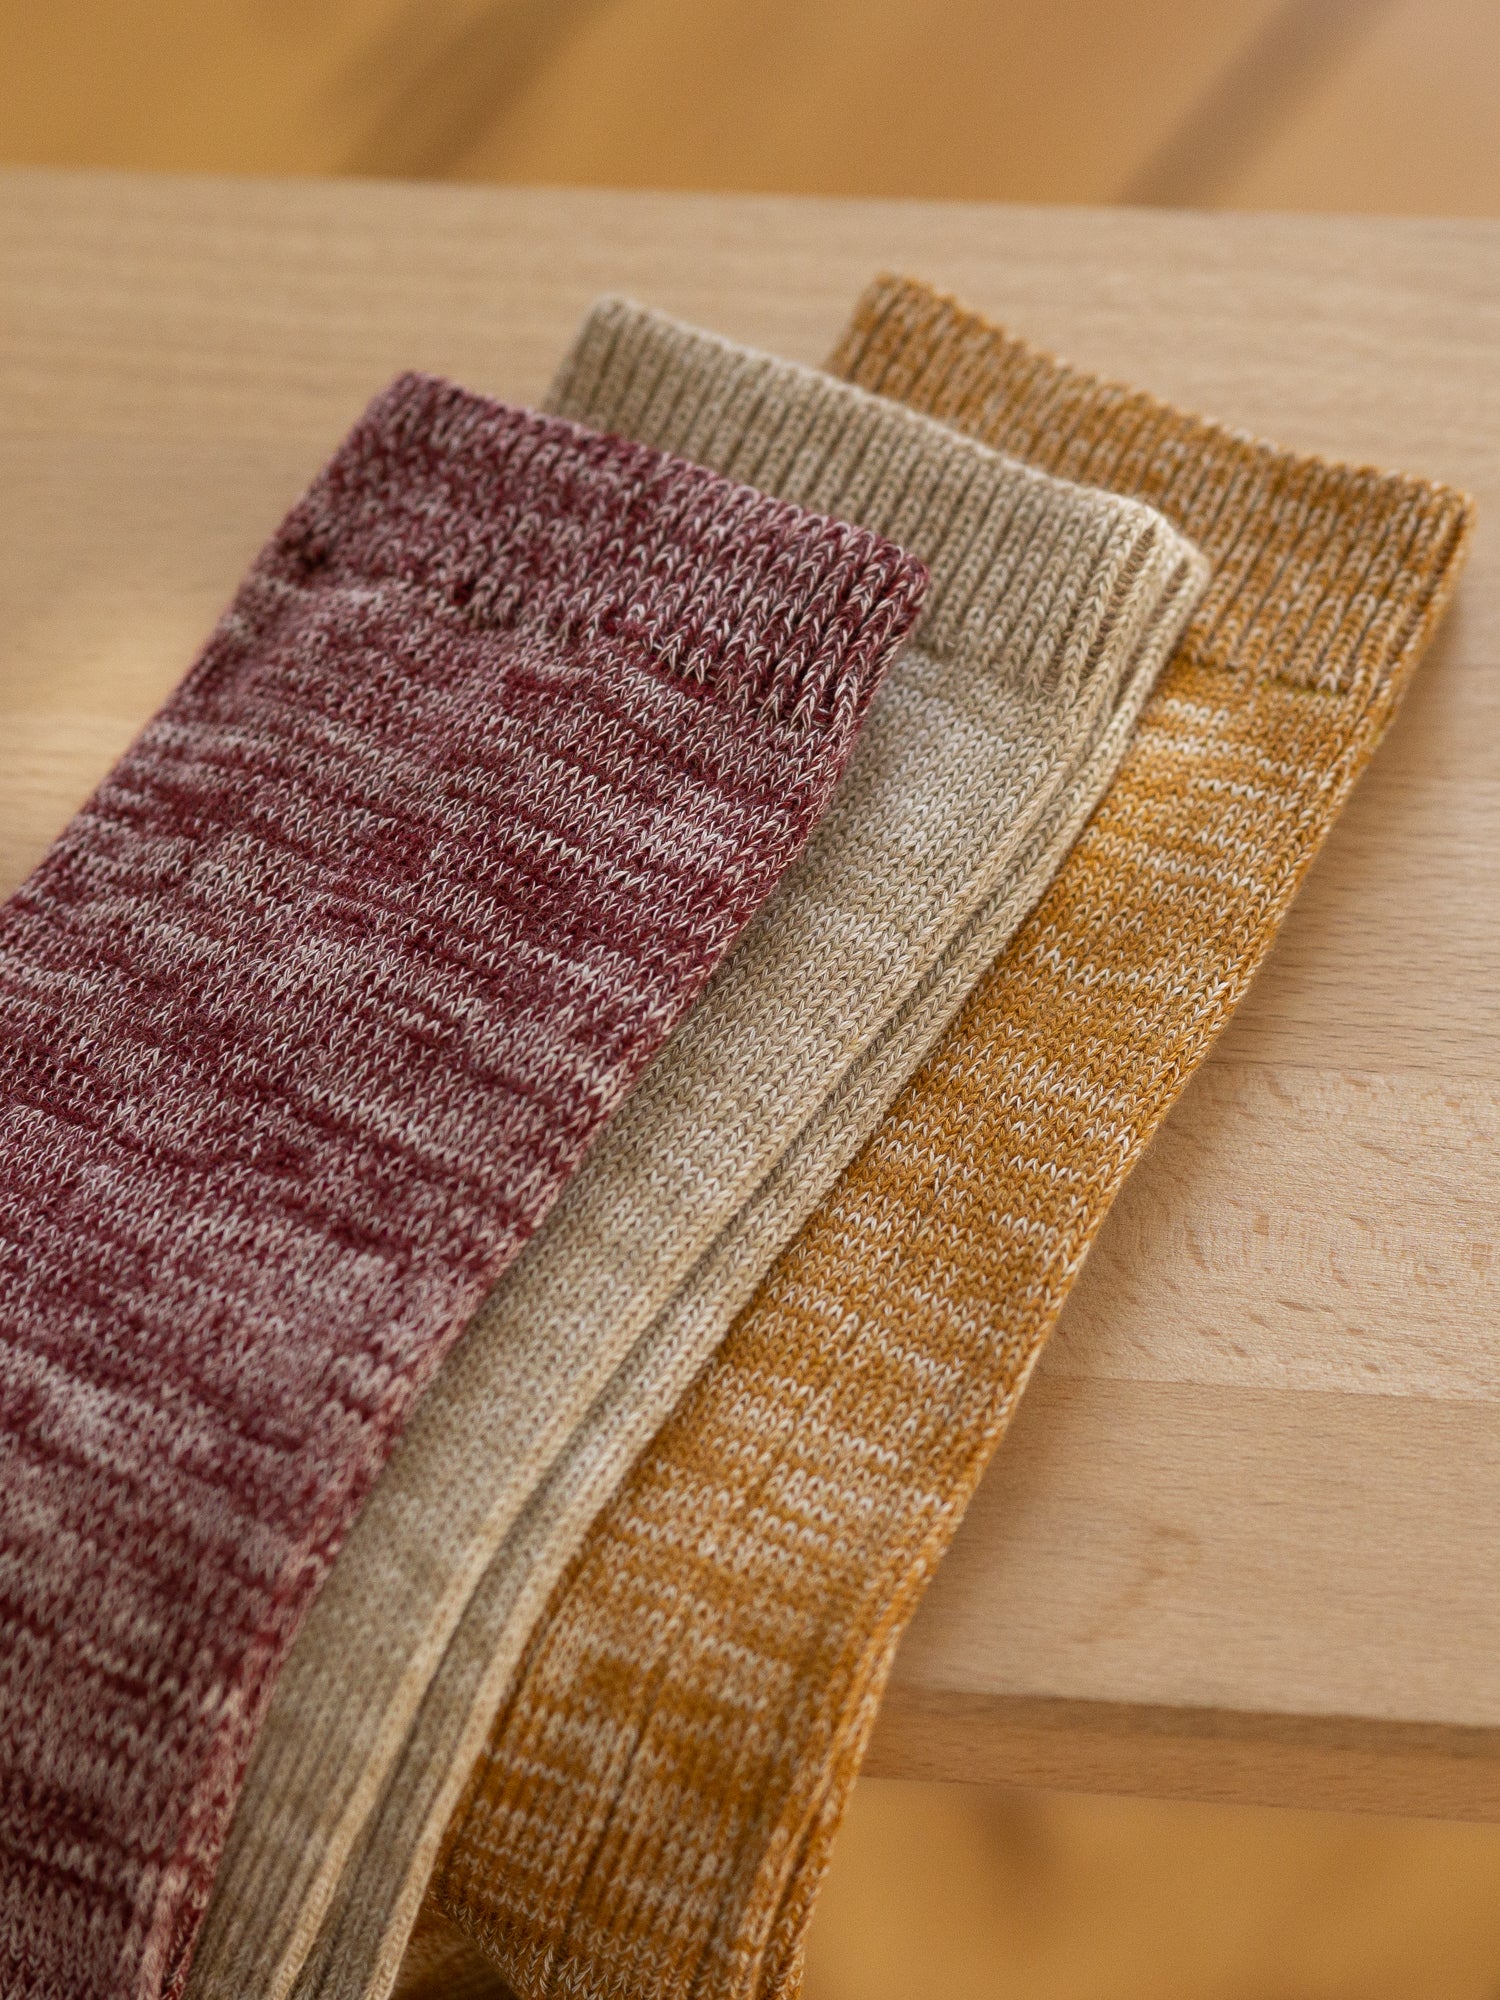 Nachhaltig und fair hergestellte  FUXBAU Socken in senfgelb, beige und bordeaux meliert aus GOTS zertifizierter Biobaumwolle